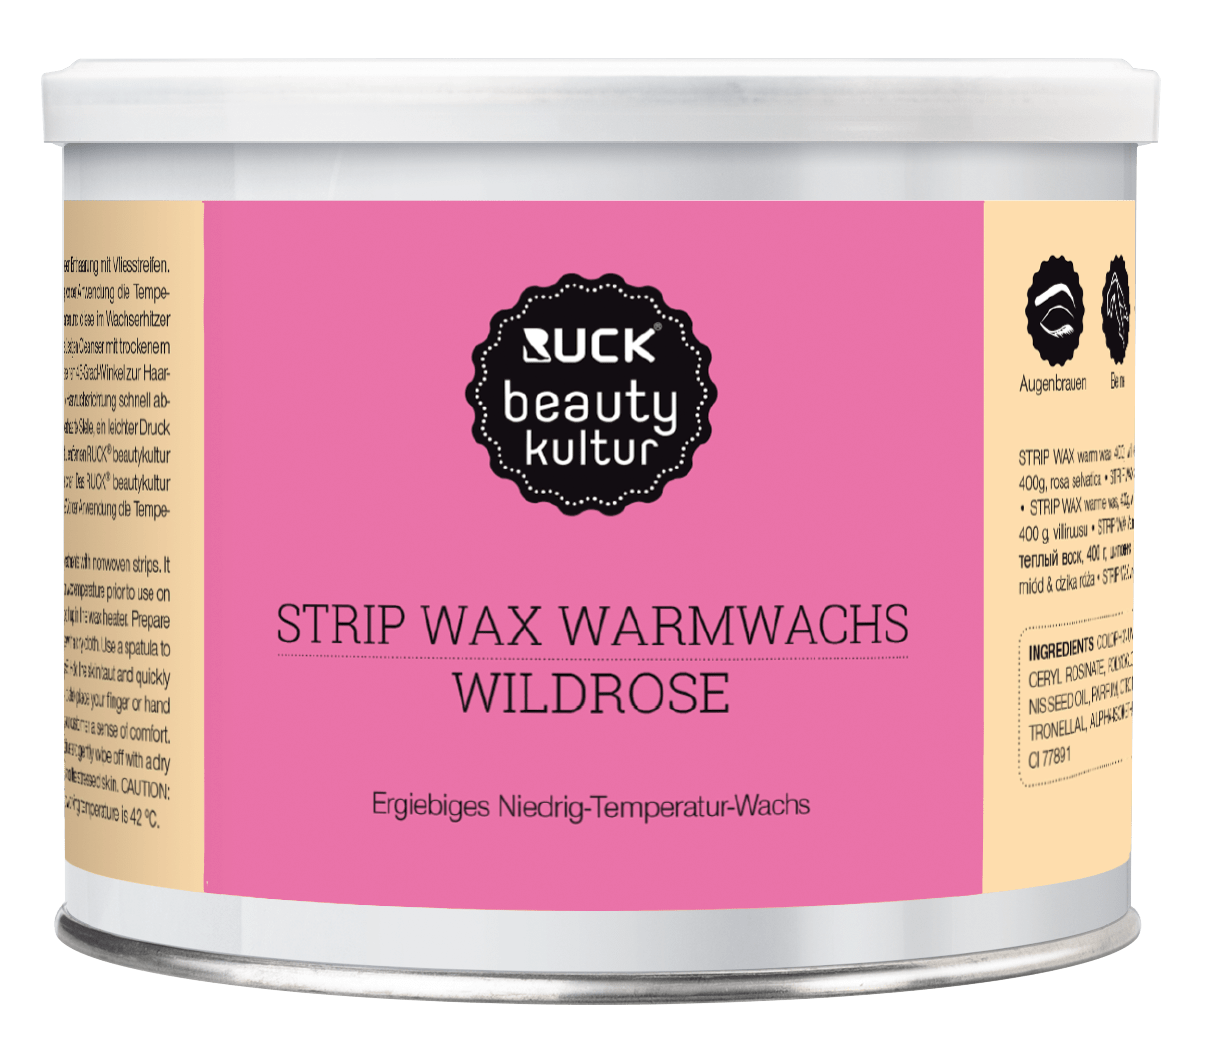 RUCK beautykultur - STRIP WAX Warmwachs, 400 g in pink